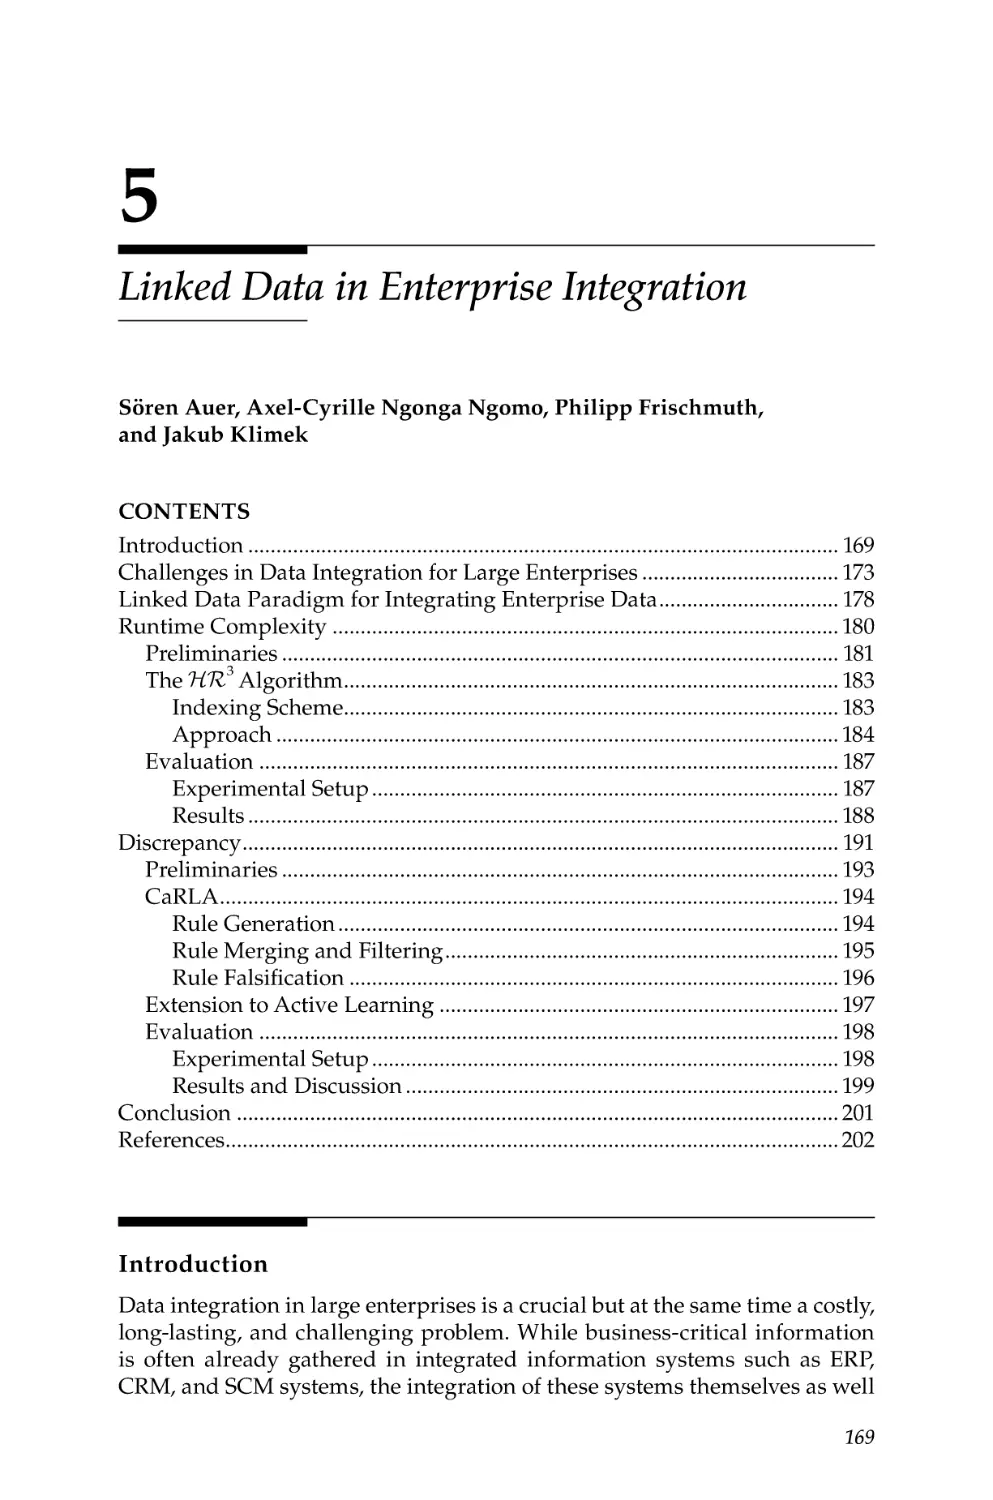 5. Linked Data in Enterprise Integration